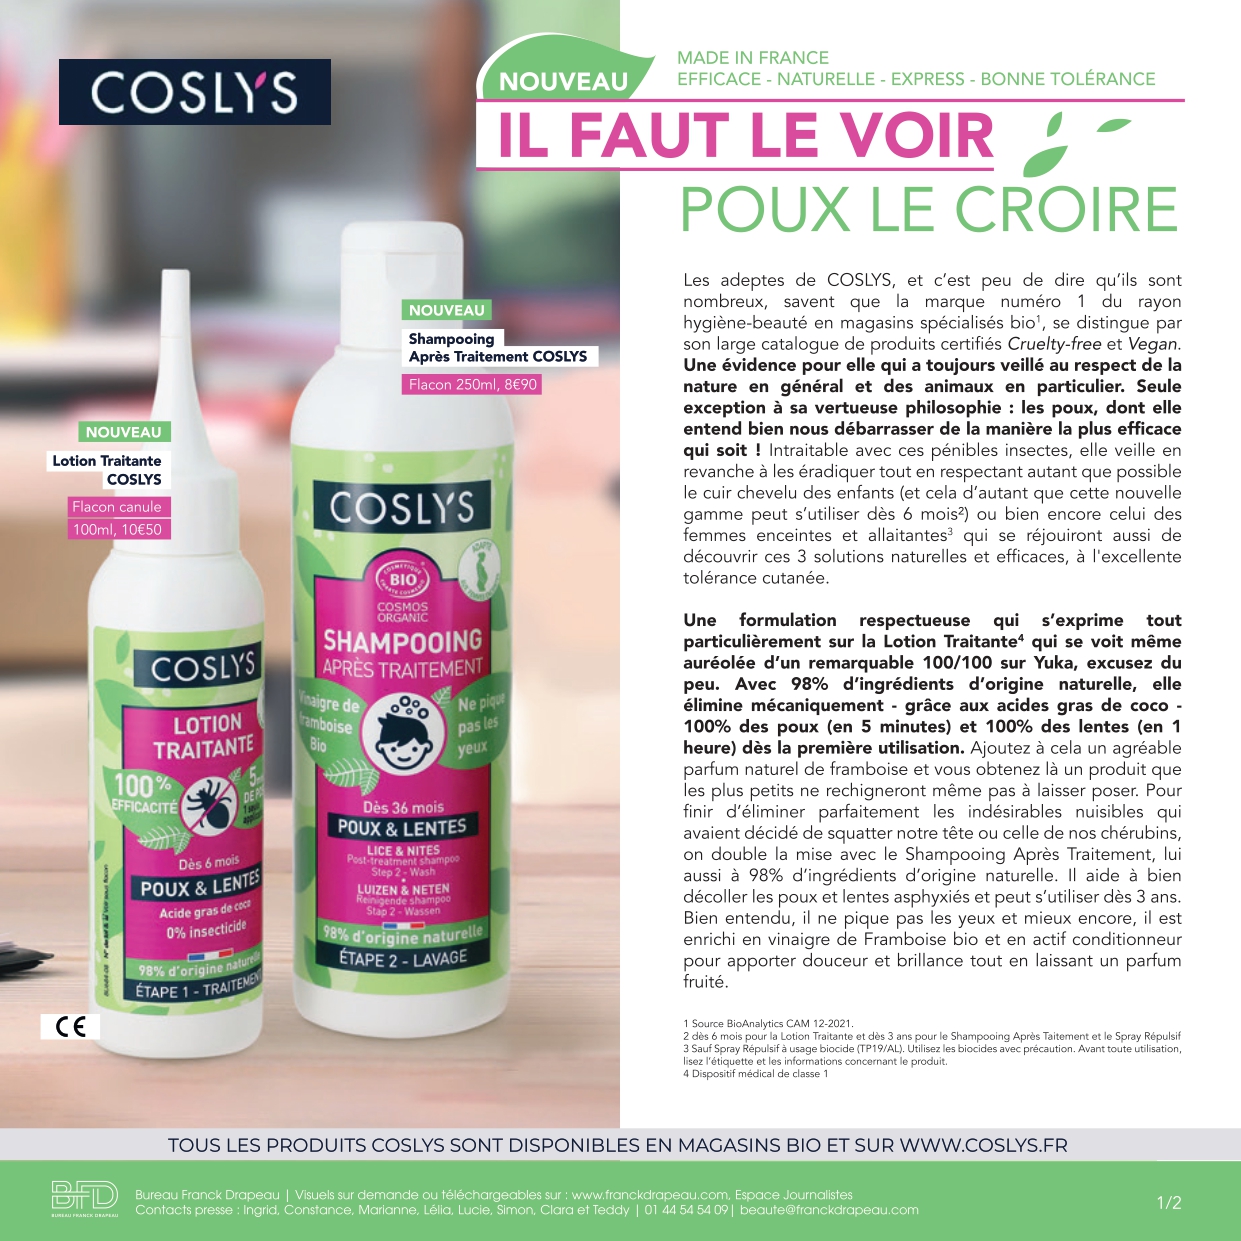 Coslys | Poux